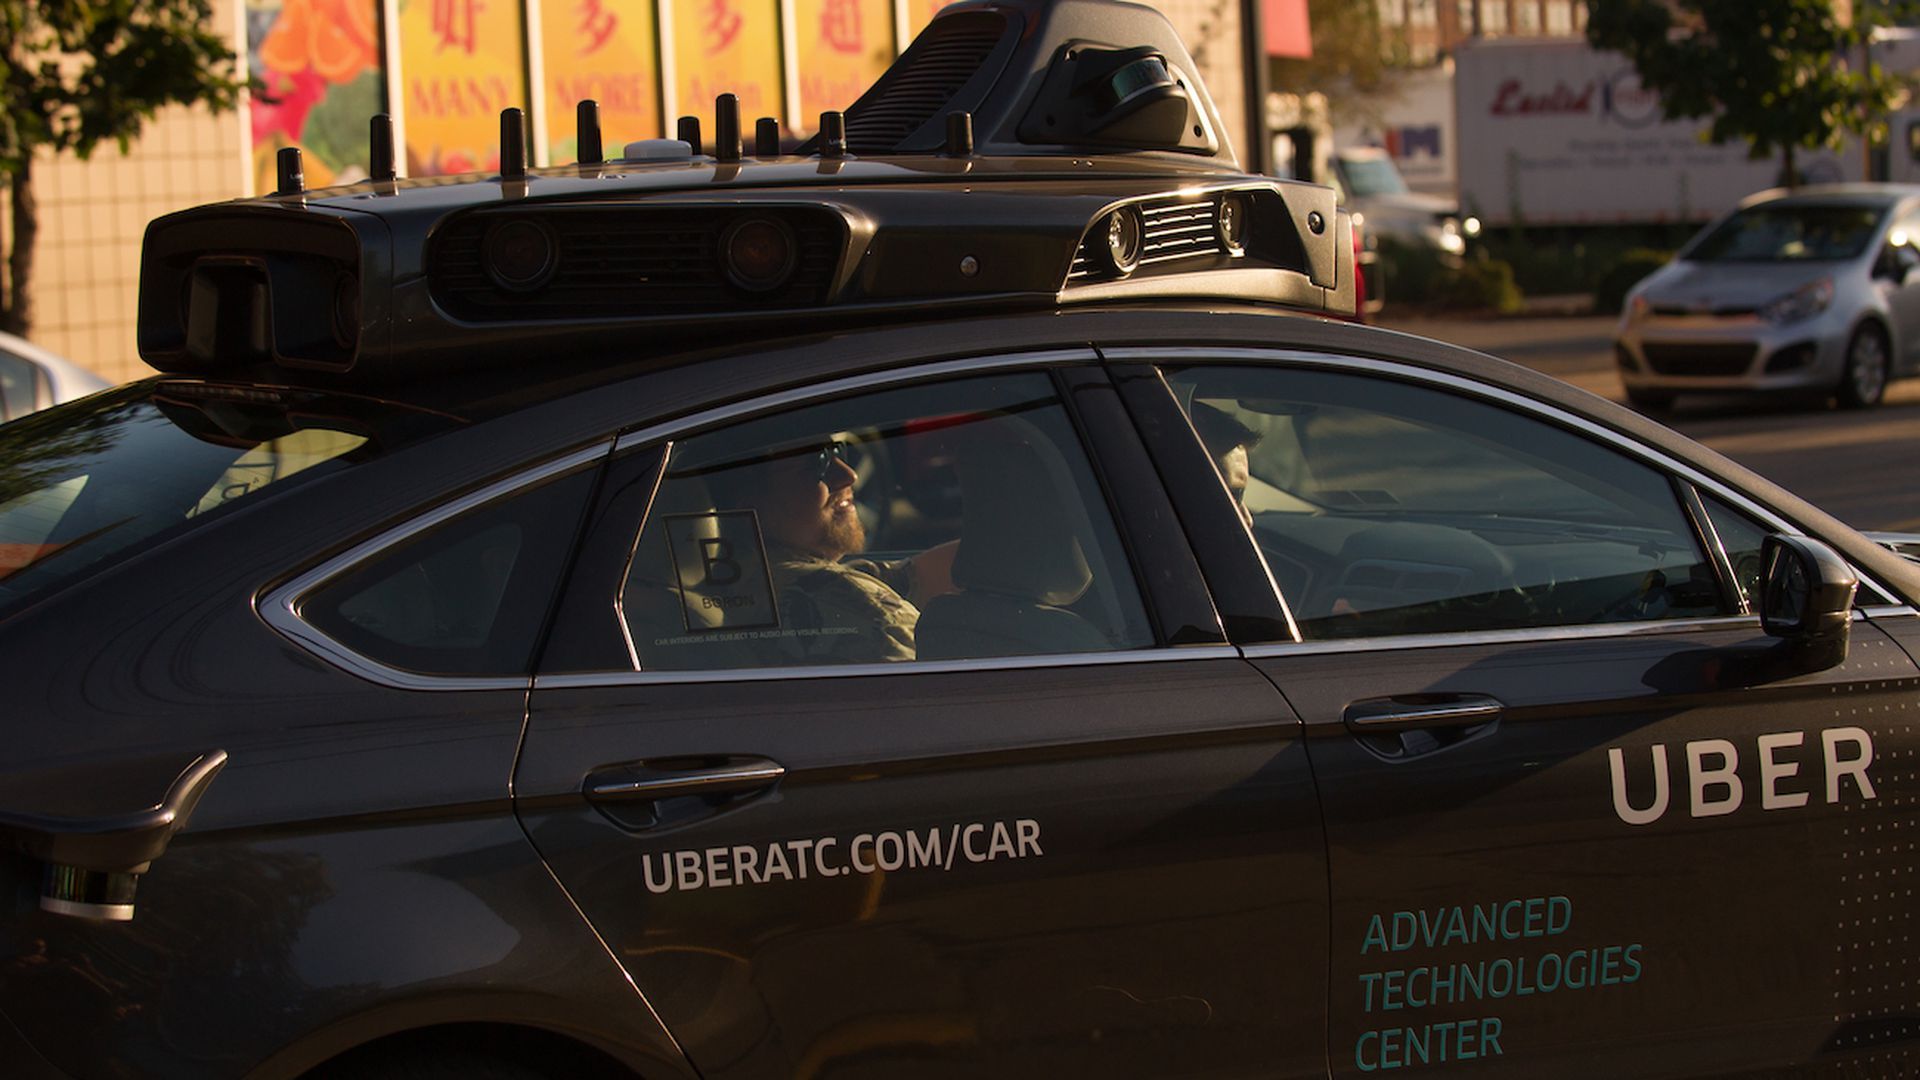 Uber self-driving car in Pittsburgh.